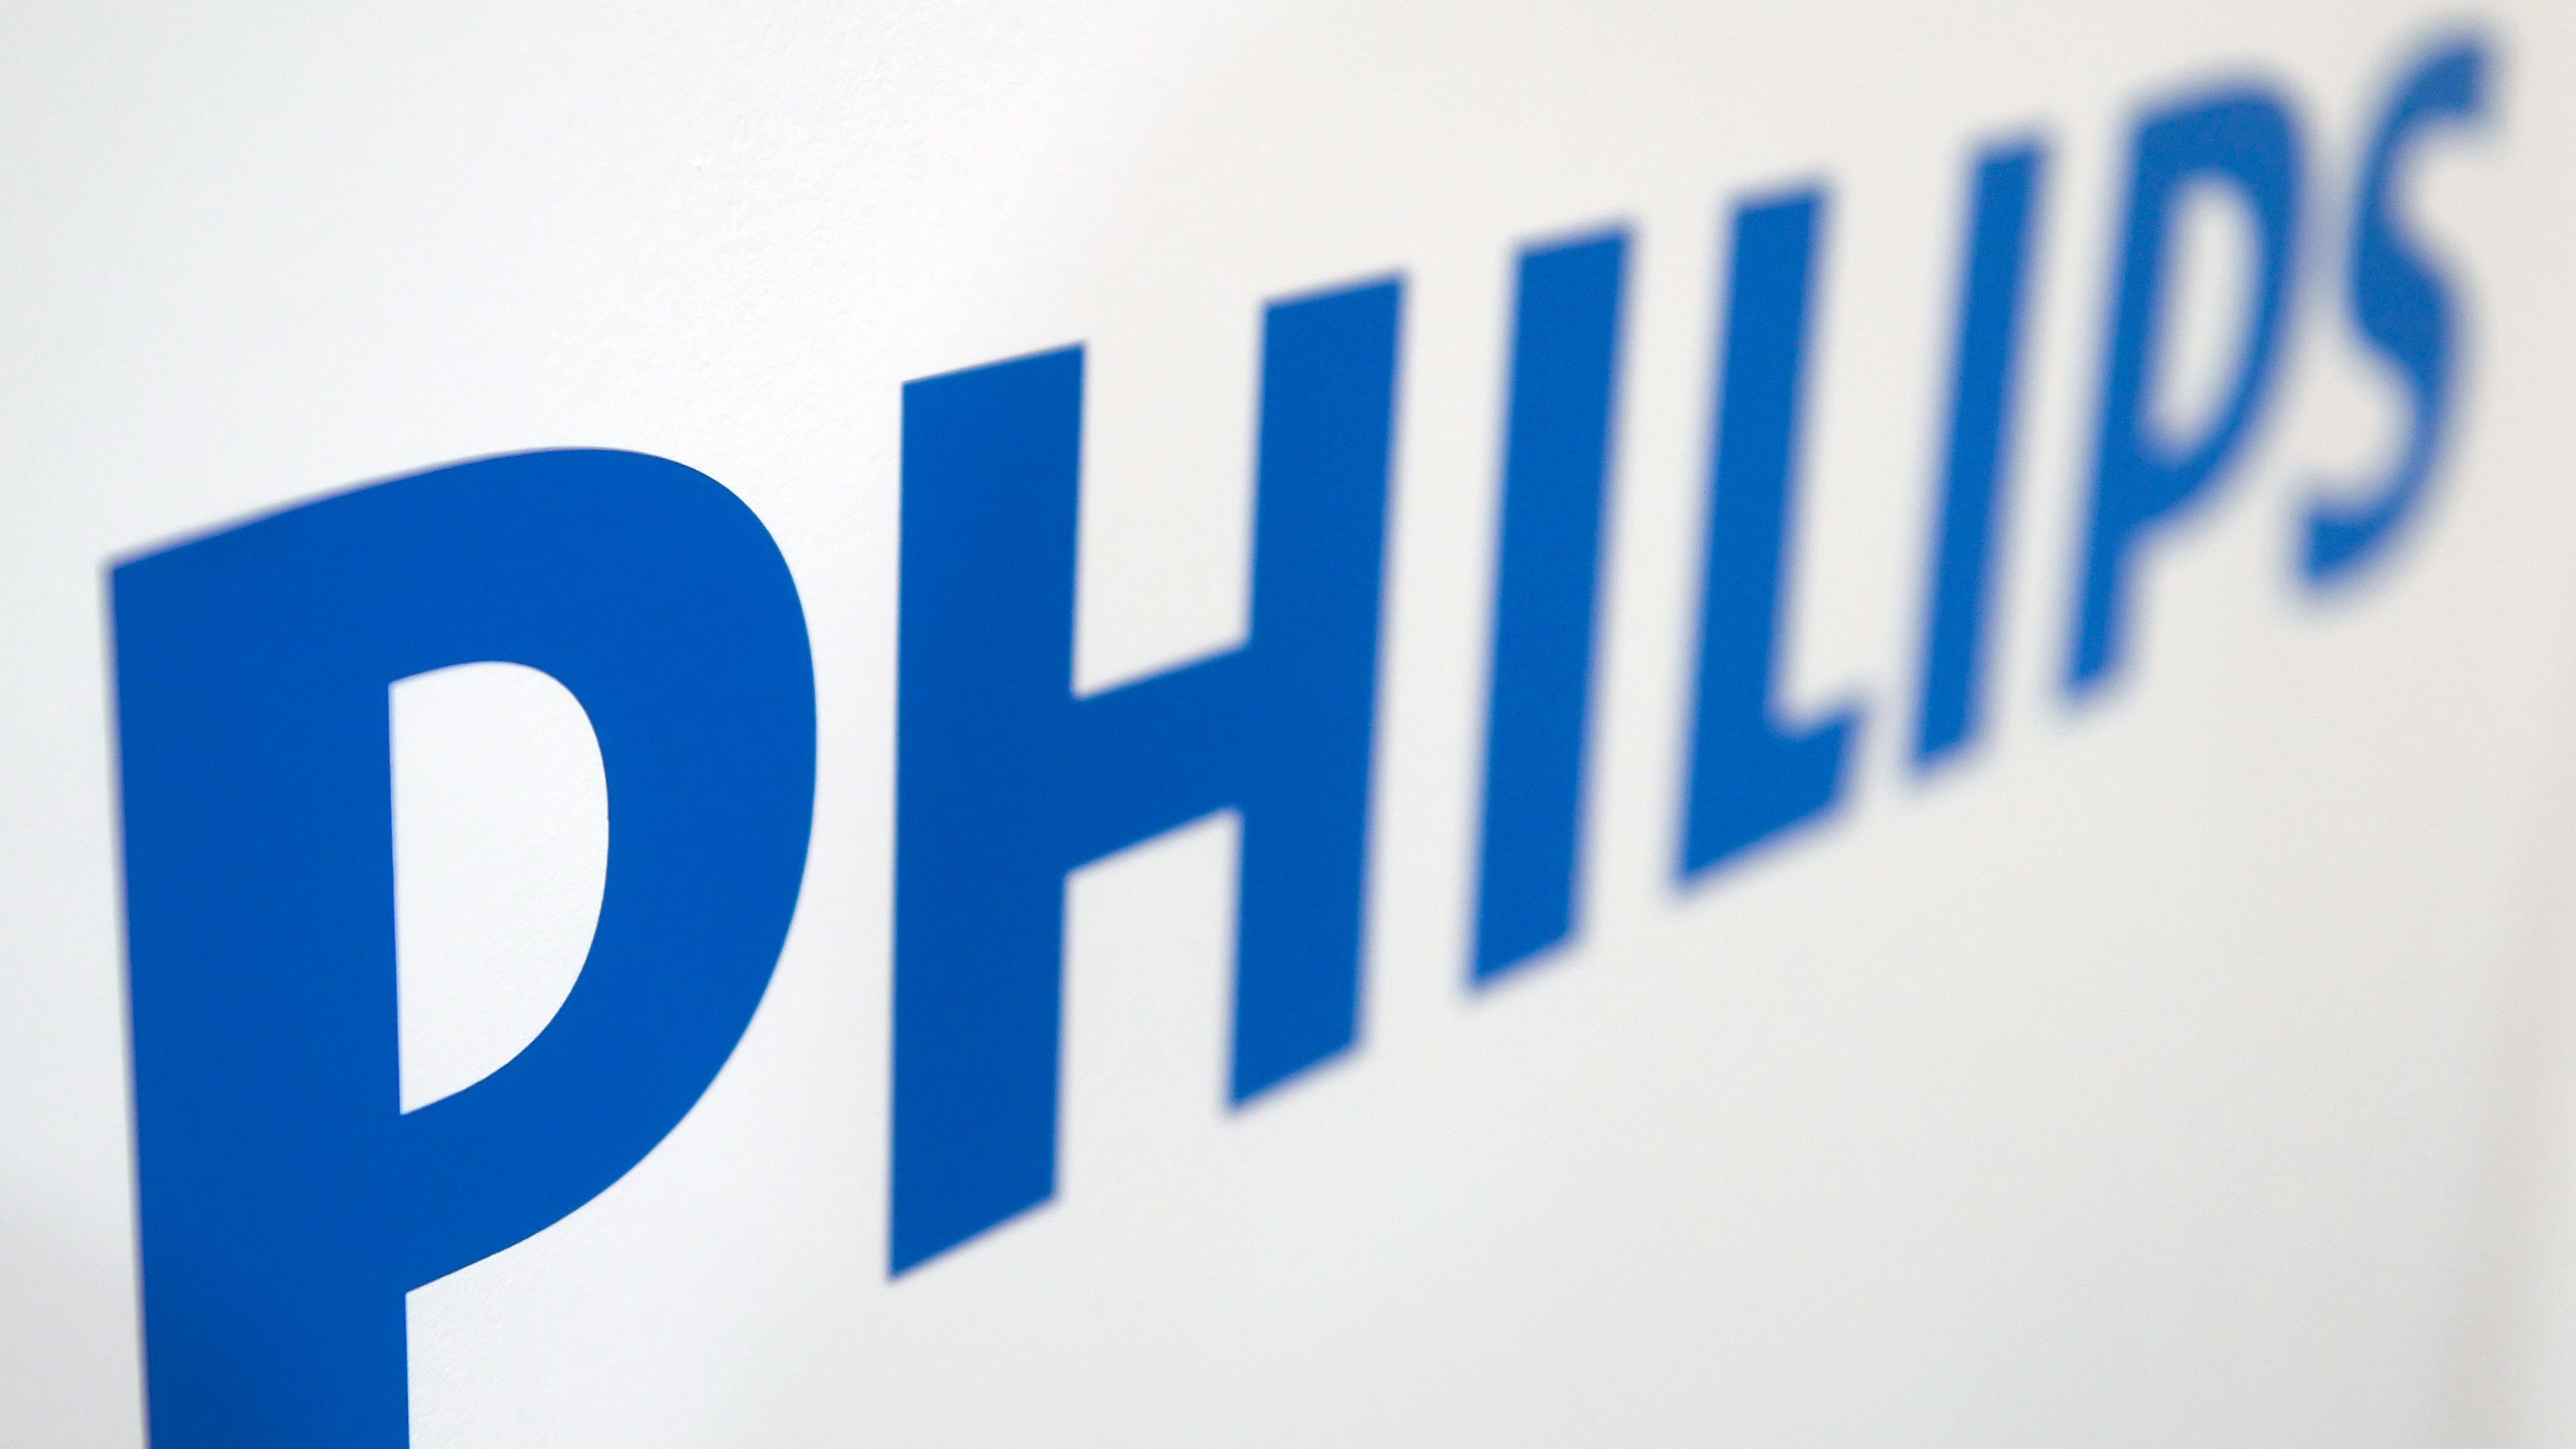 Der Medizintechnikhersteller Philips will durch einen weiteren massiven Stellenabbau in den kommenden Jahren die Profitabilität kräftig steigern.